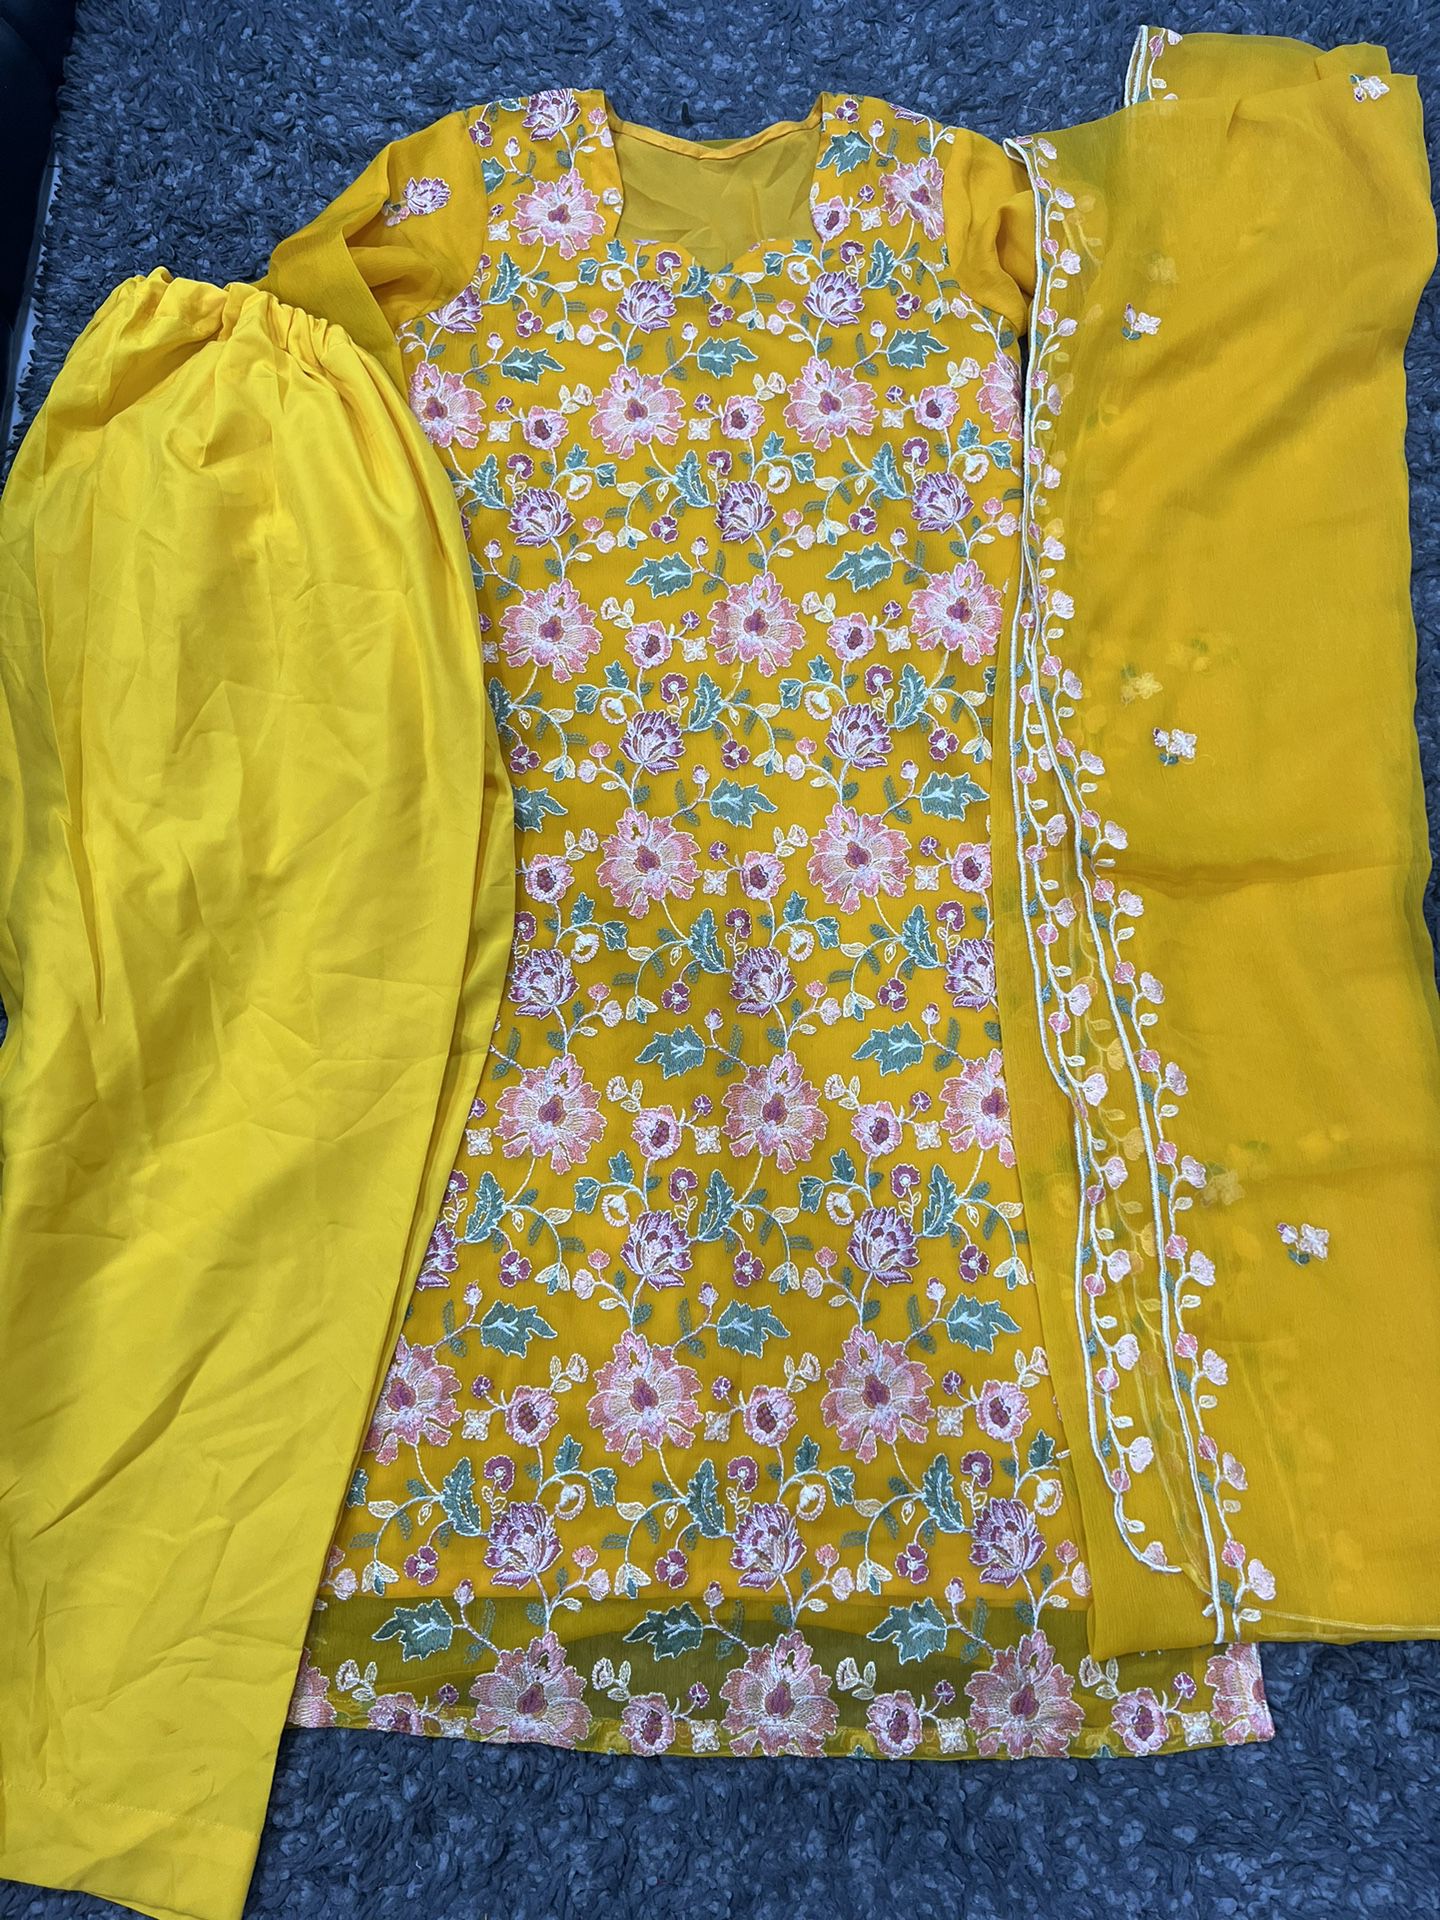 Pakistani Dress 